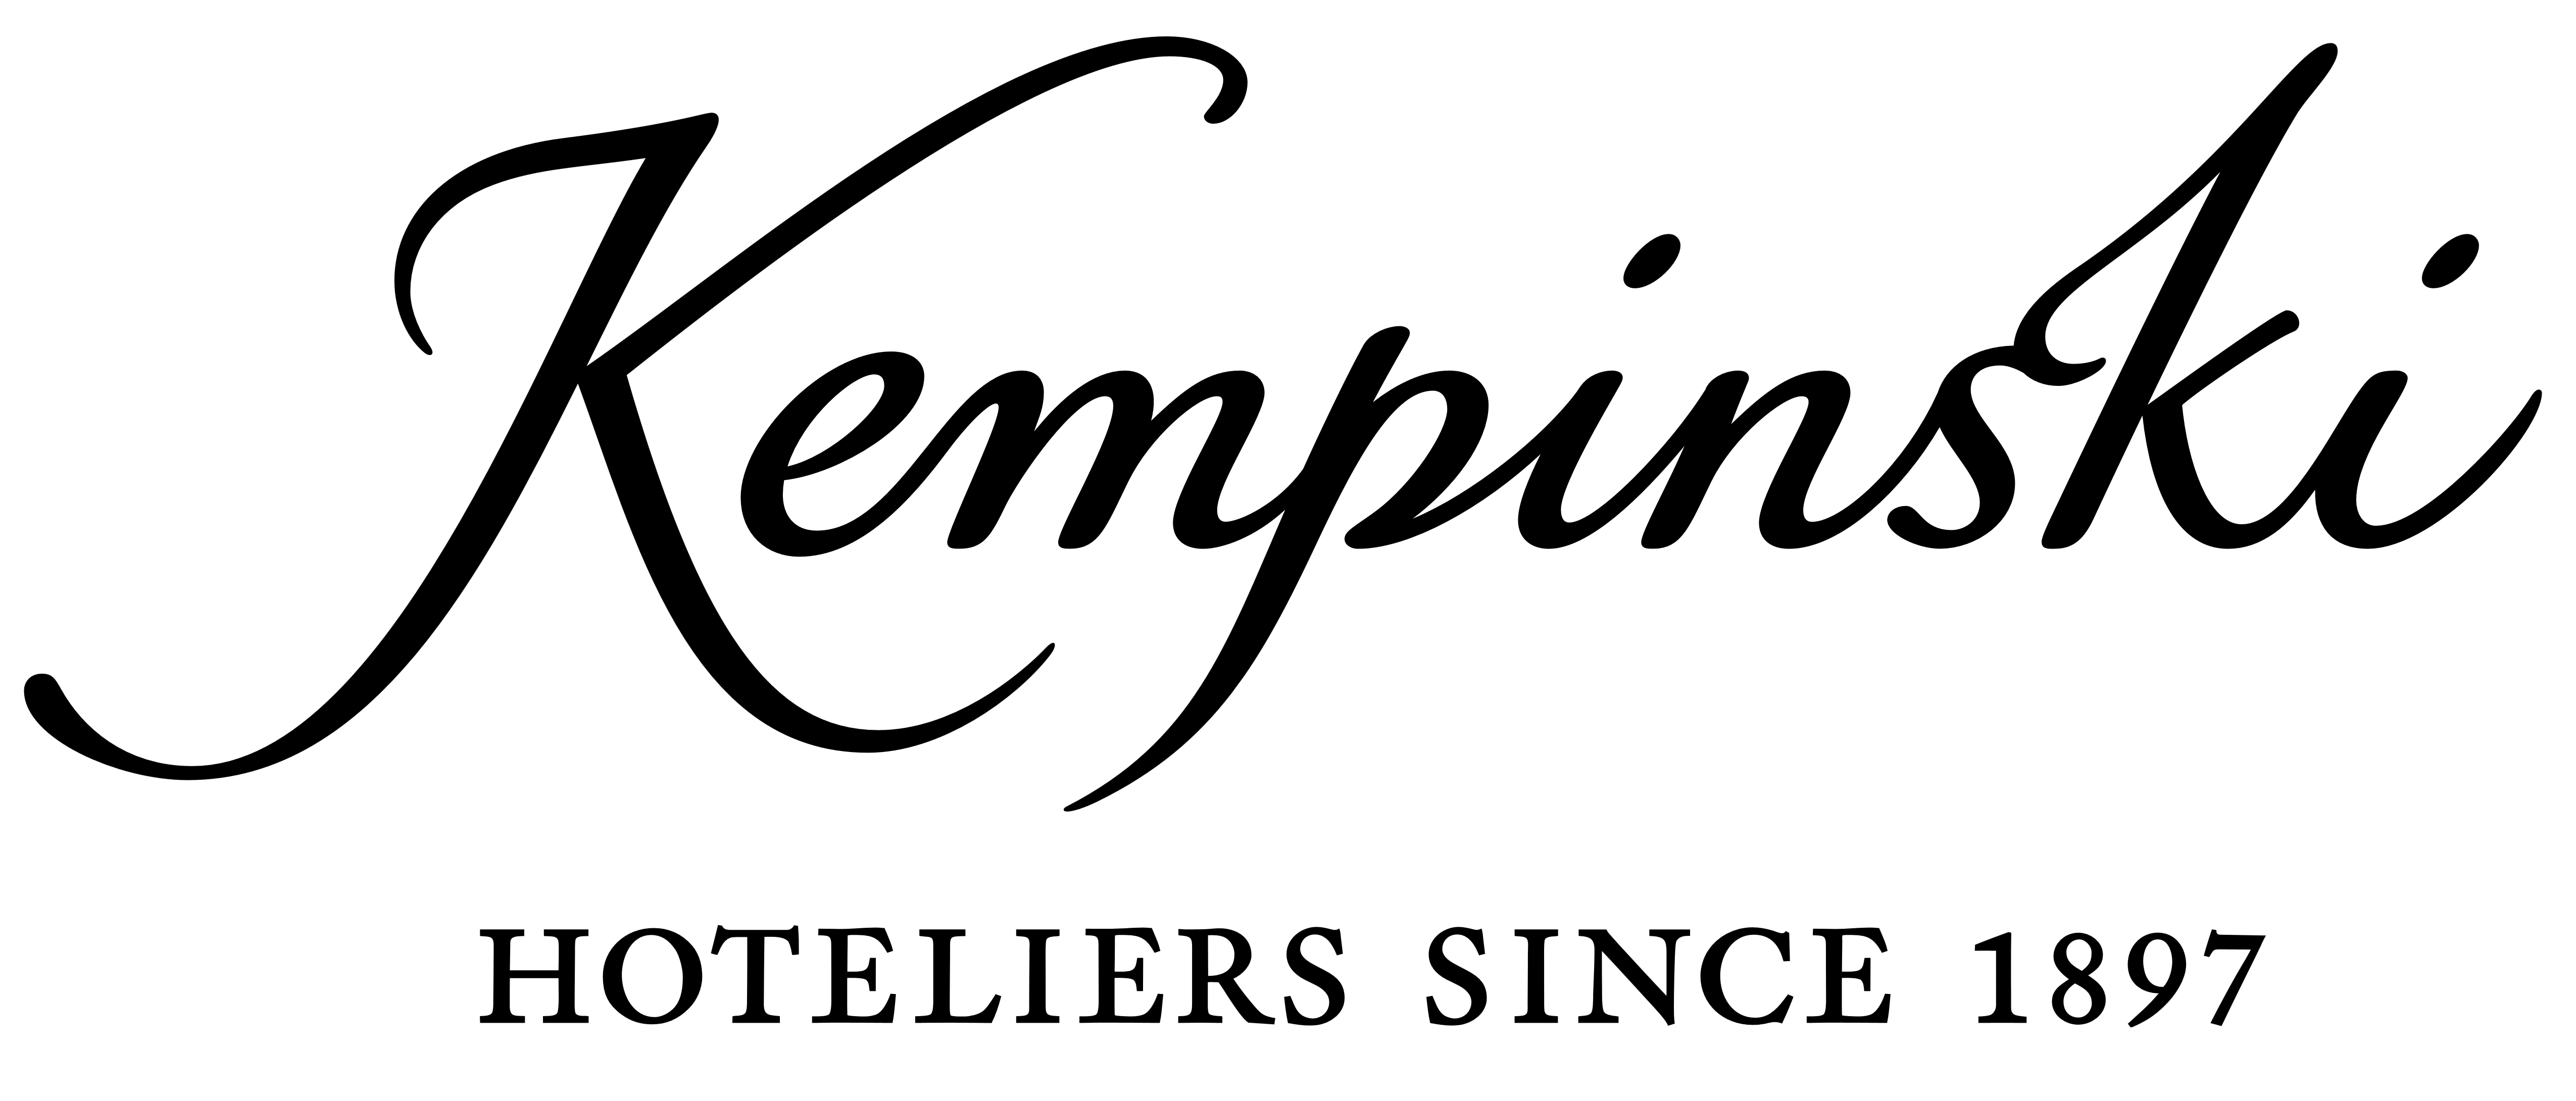 Kempinski_logo